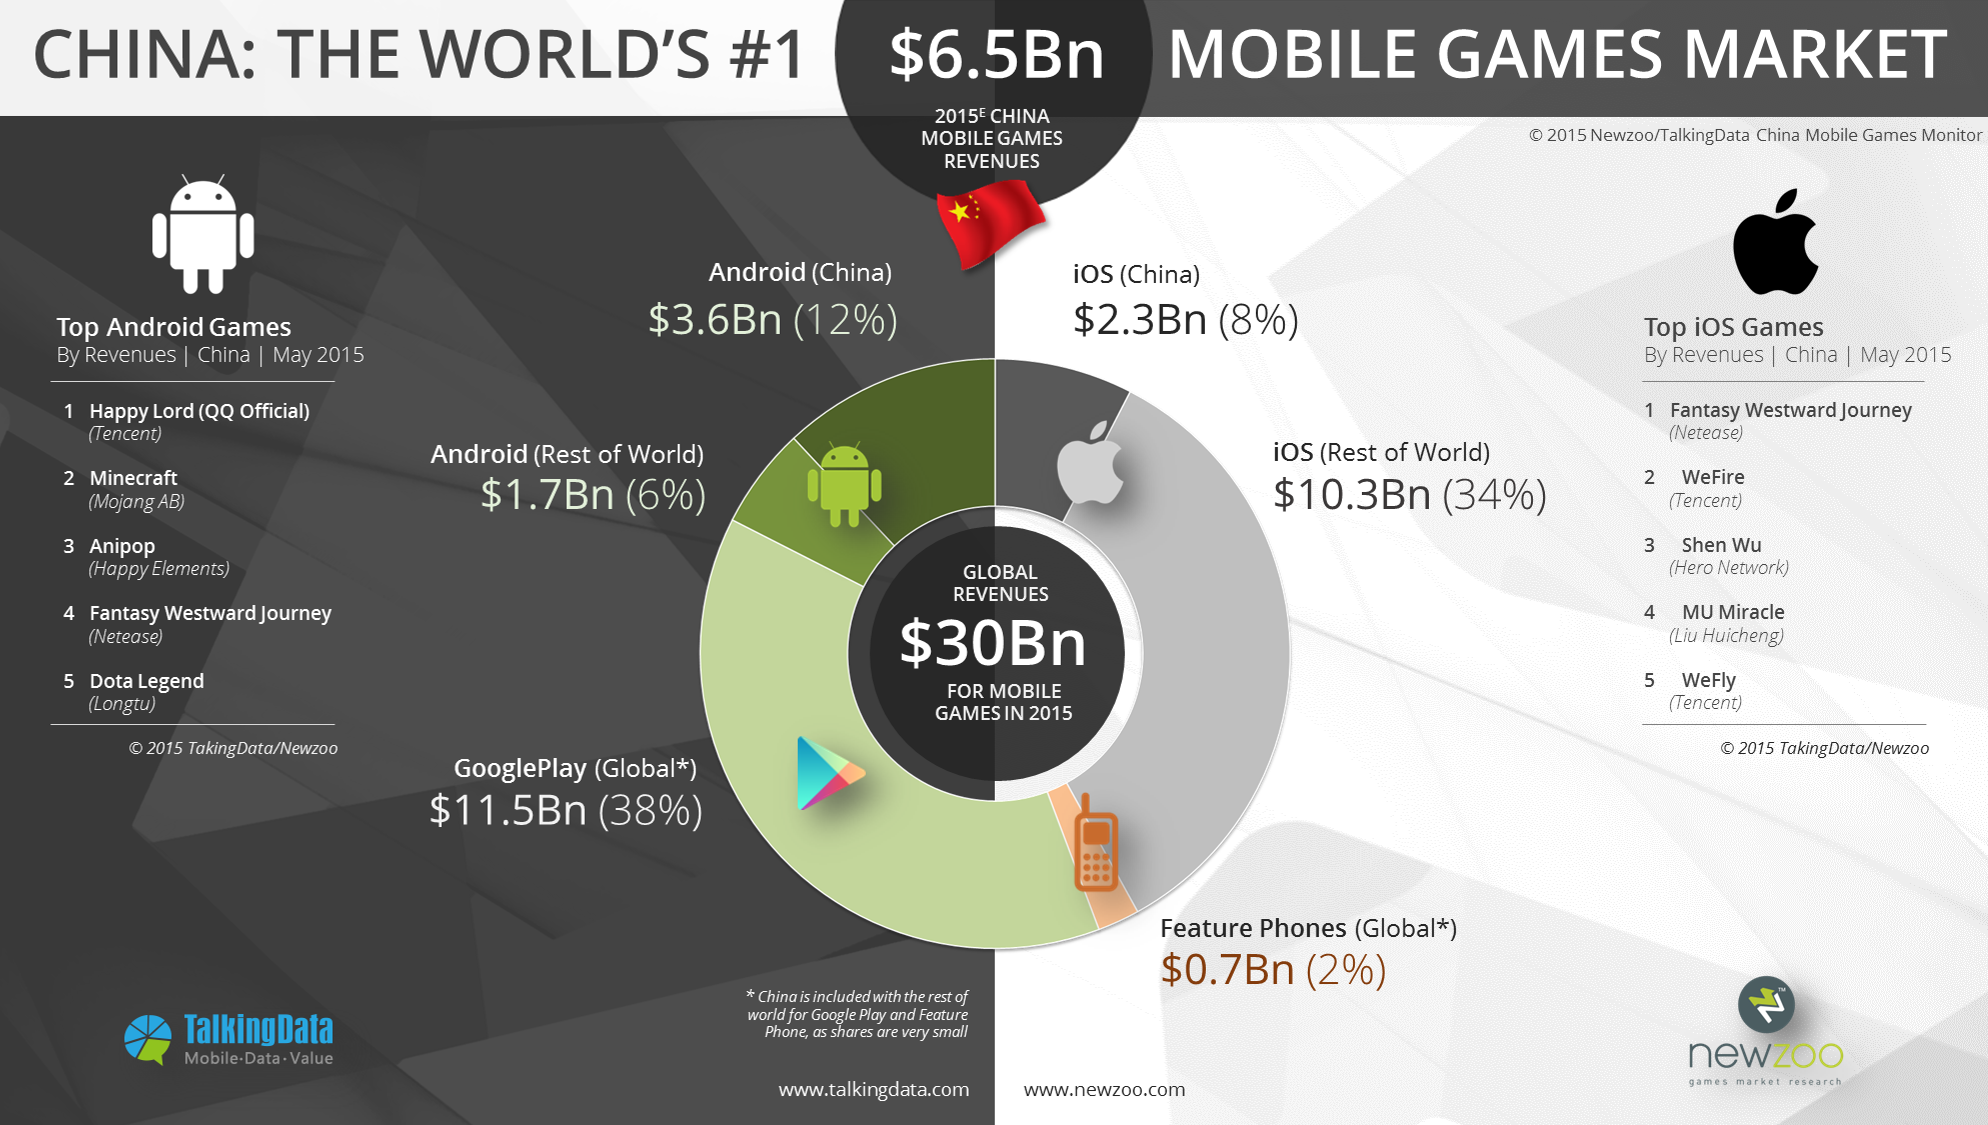 Với 6,5 tỉ USD, Trung Quốc trở thành thị trường game di động số 1 thế giới